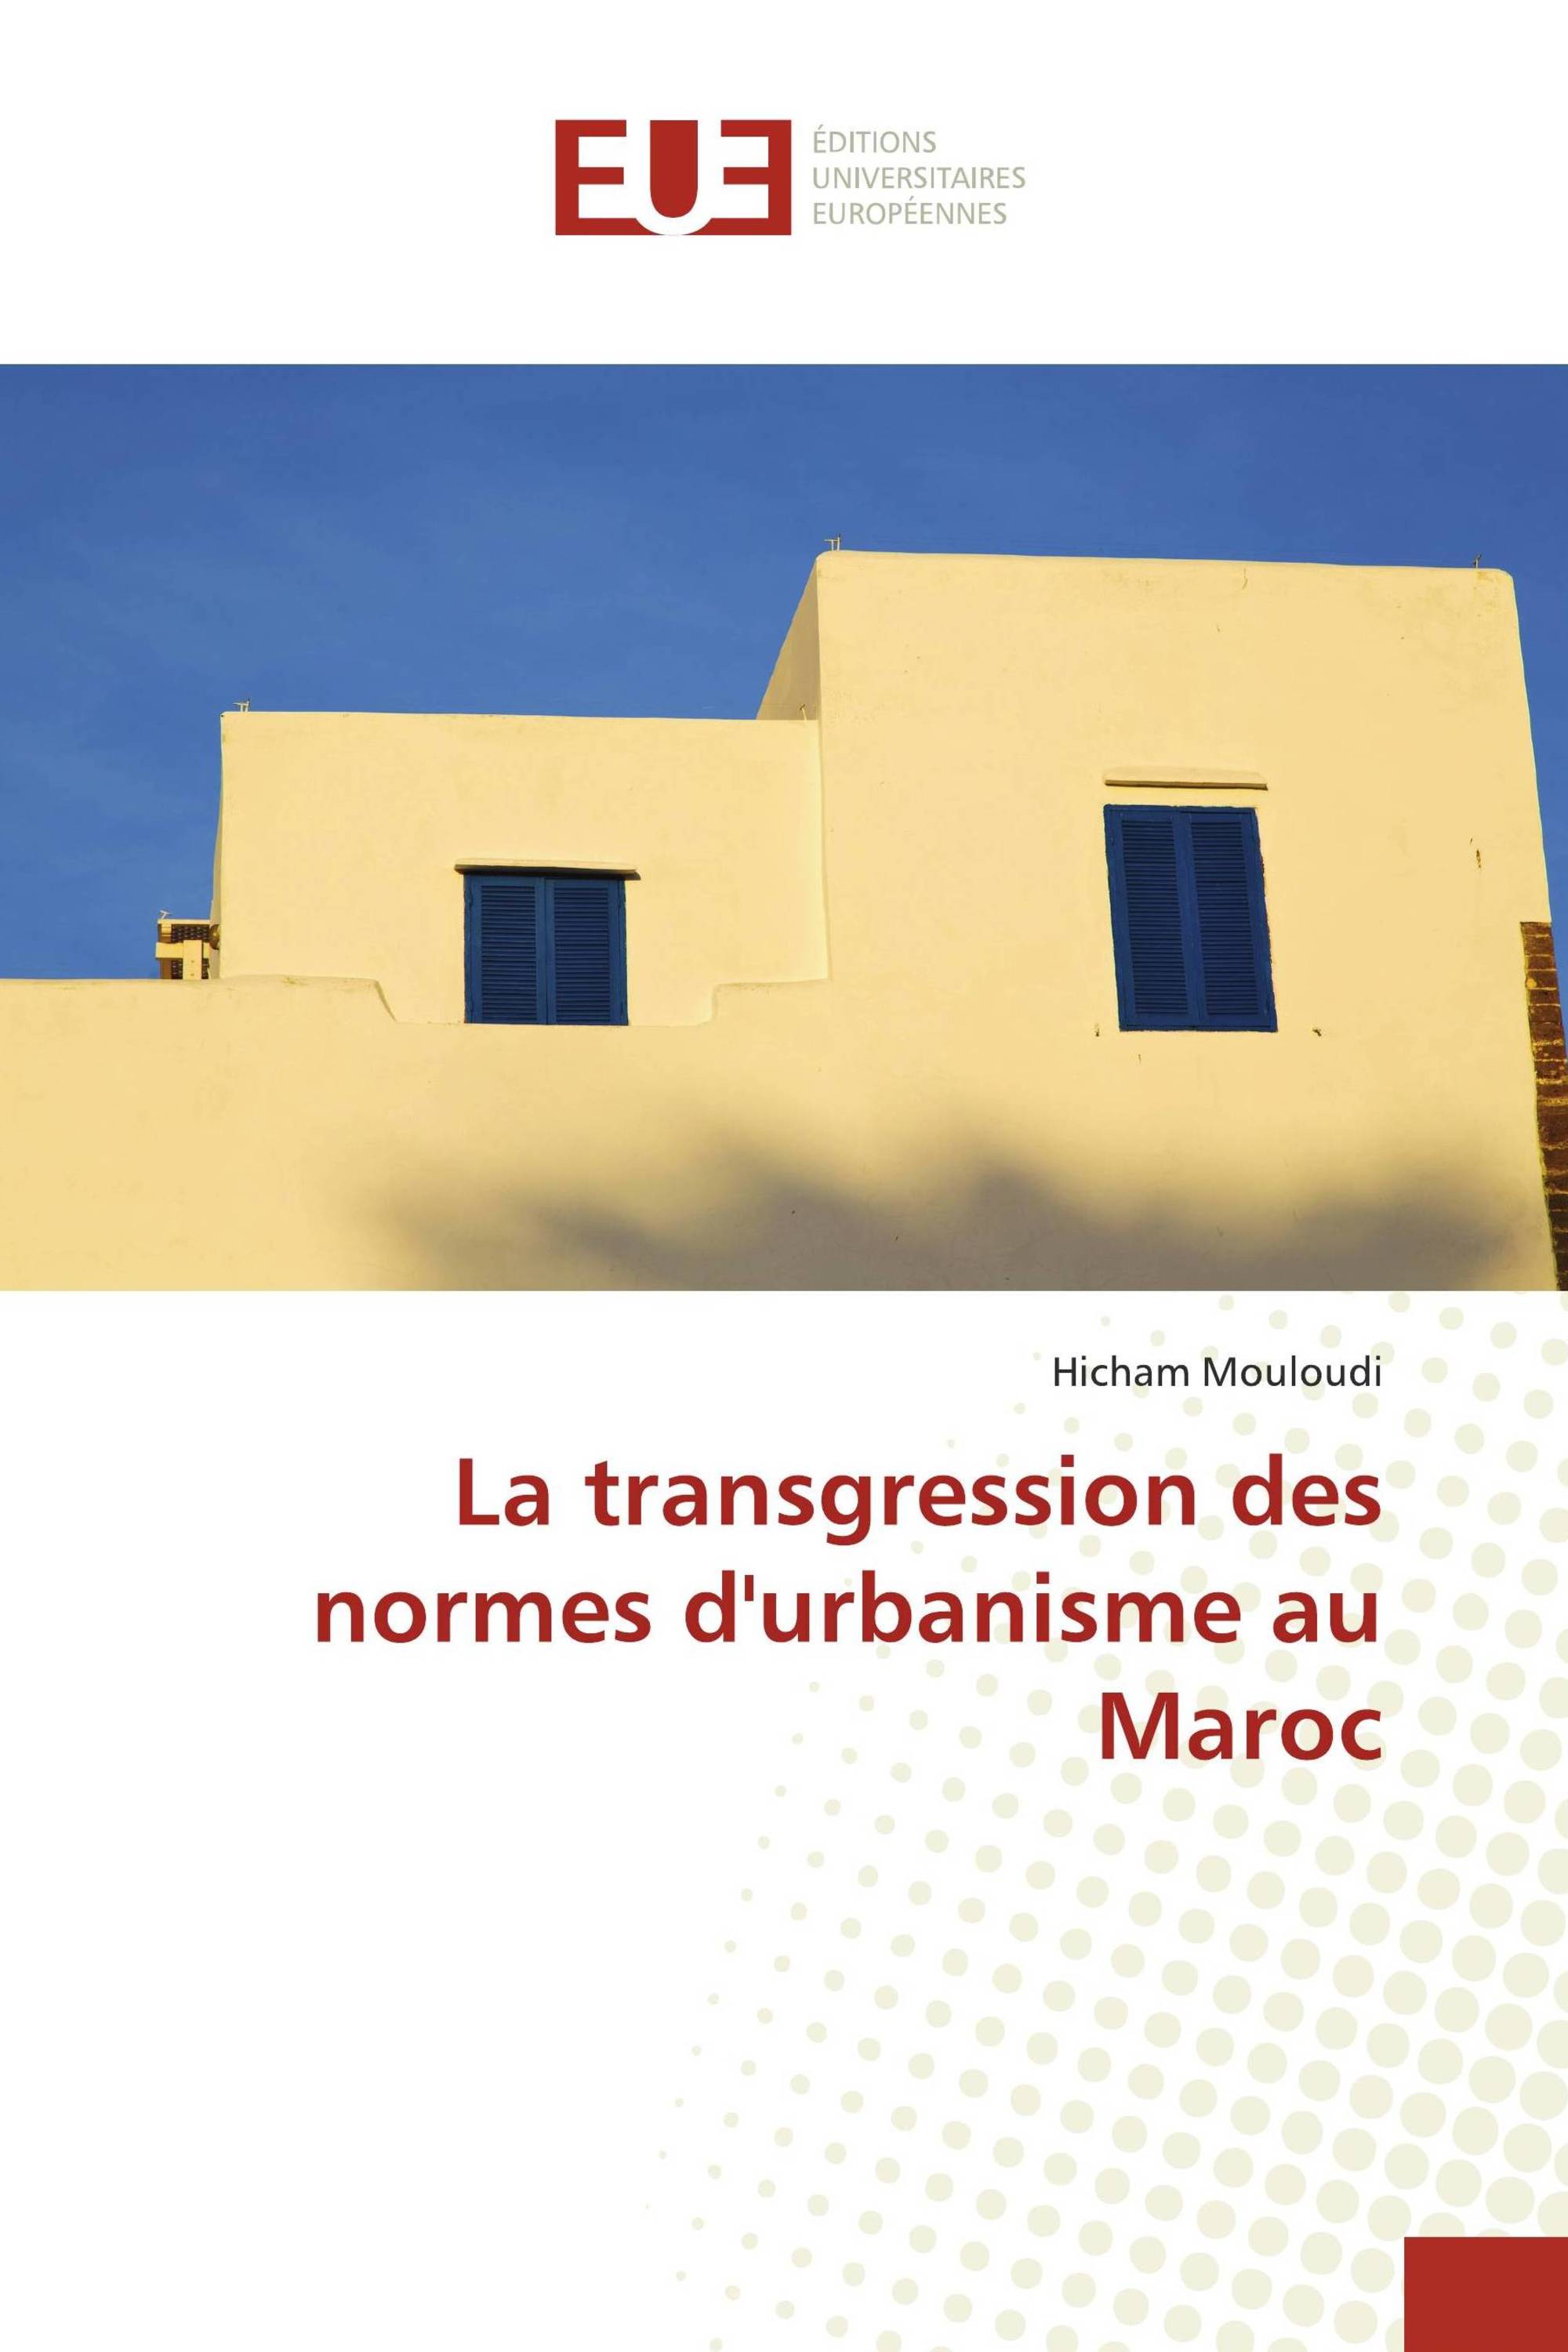 La transgression des normes d'urbanisme au Maroc